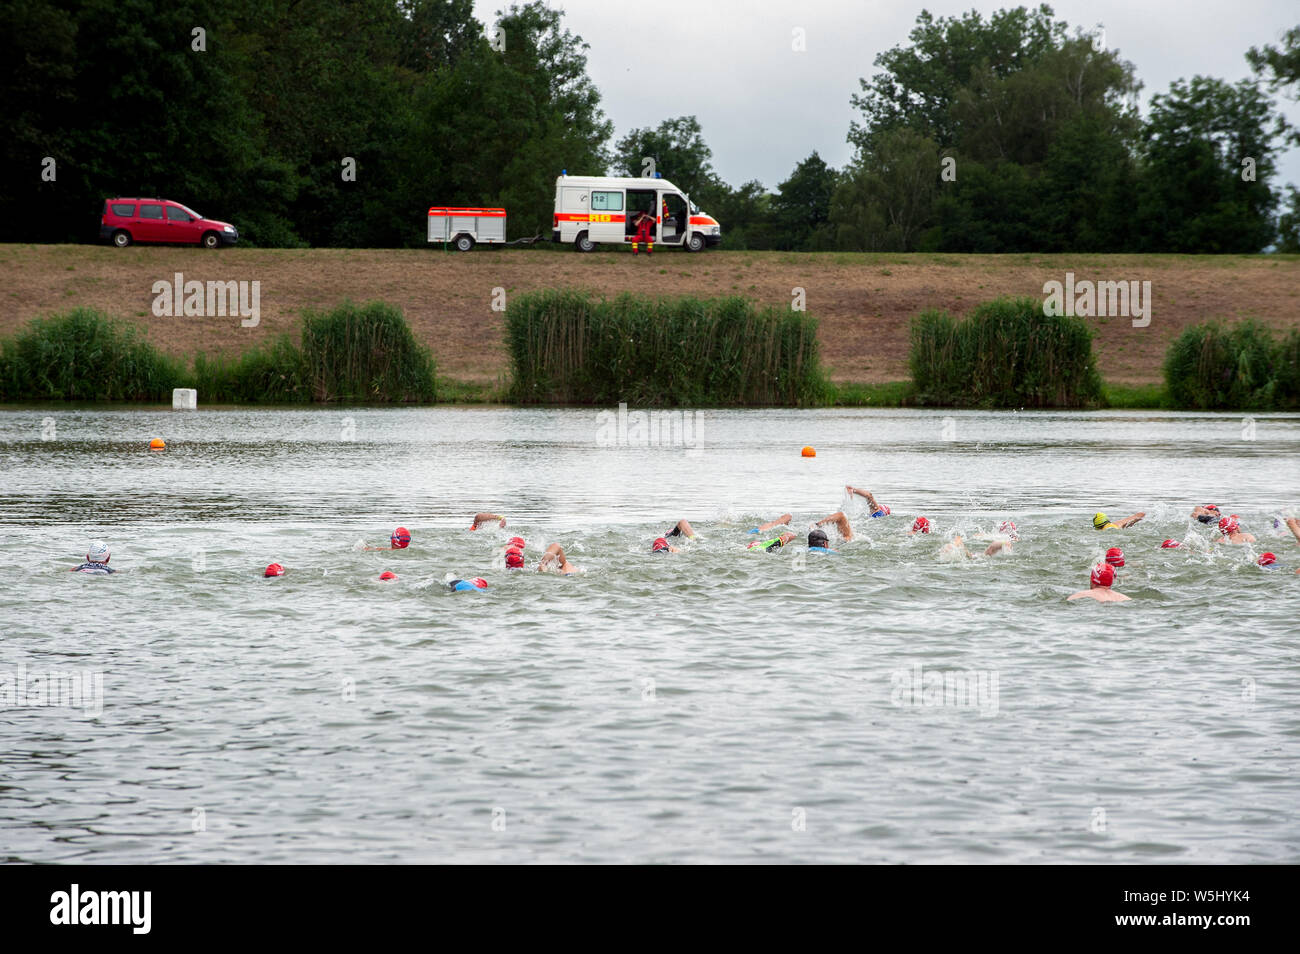 Degensbachsee, Germania, Luglio 2019: Triathlon Ilshofen. Gli atleti il nuoto nel lago e la vettura di soccorso con la supervisione di personale paramedico. Una profondità molto bassa Foto Stock